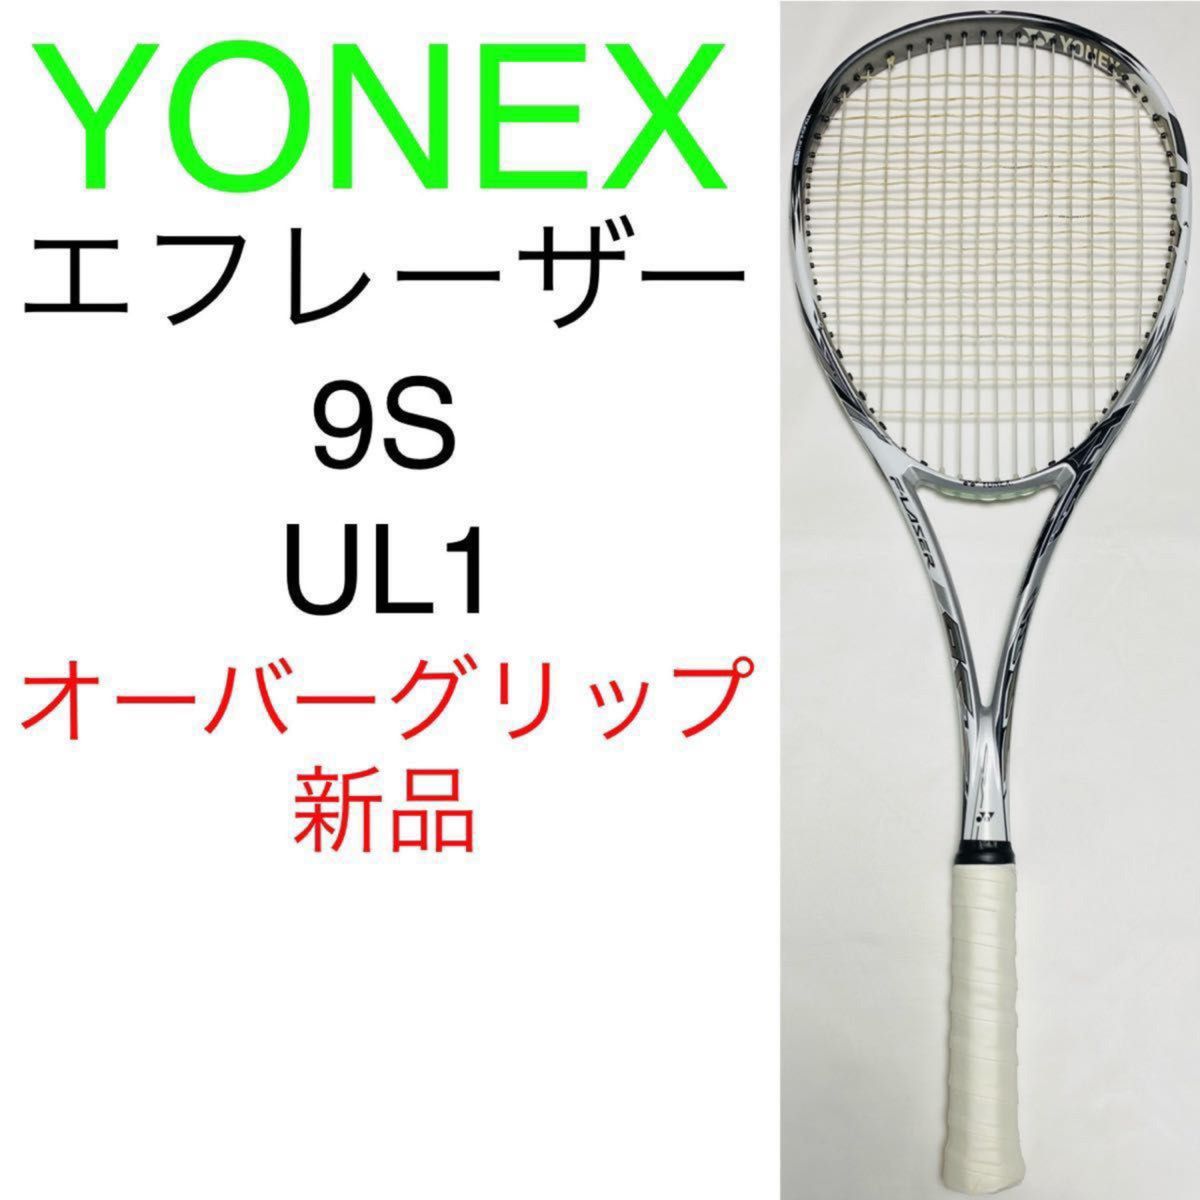 ヨネックス エフレーザー 9S UL1 YONEX F-LASER 9S プラウドホワイト ソフトテニス 軟式テニス ラケット